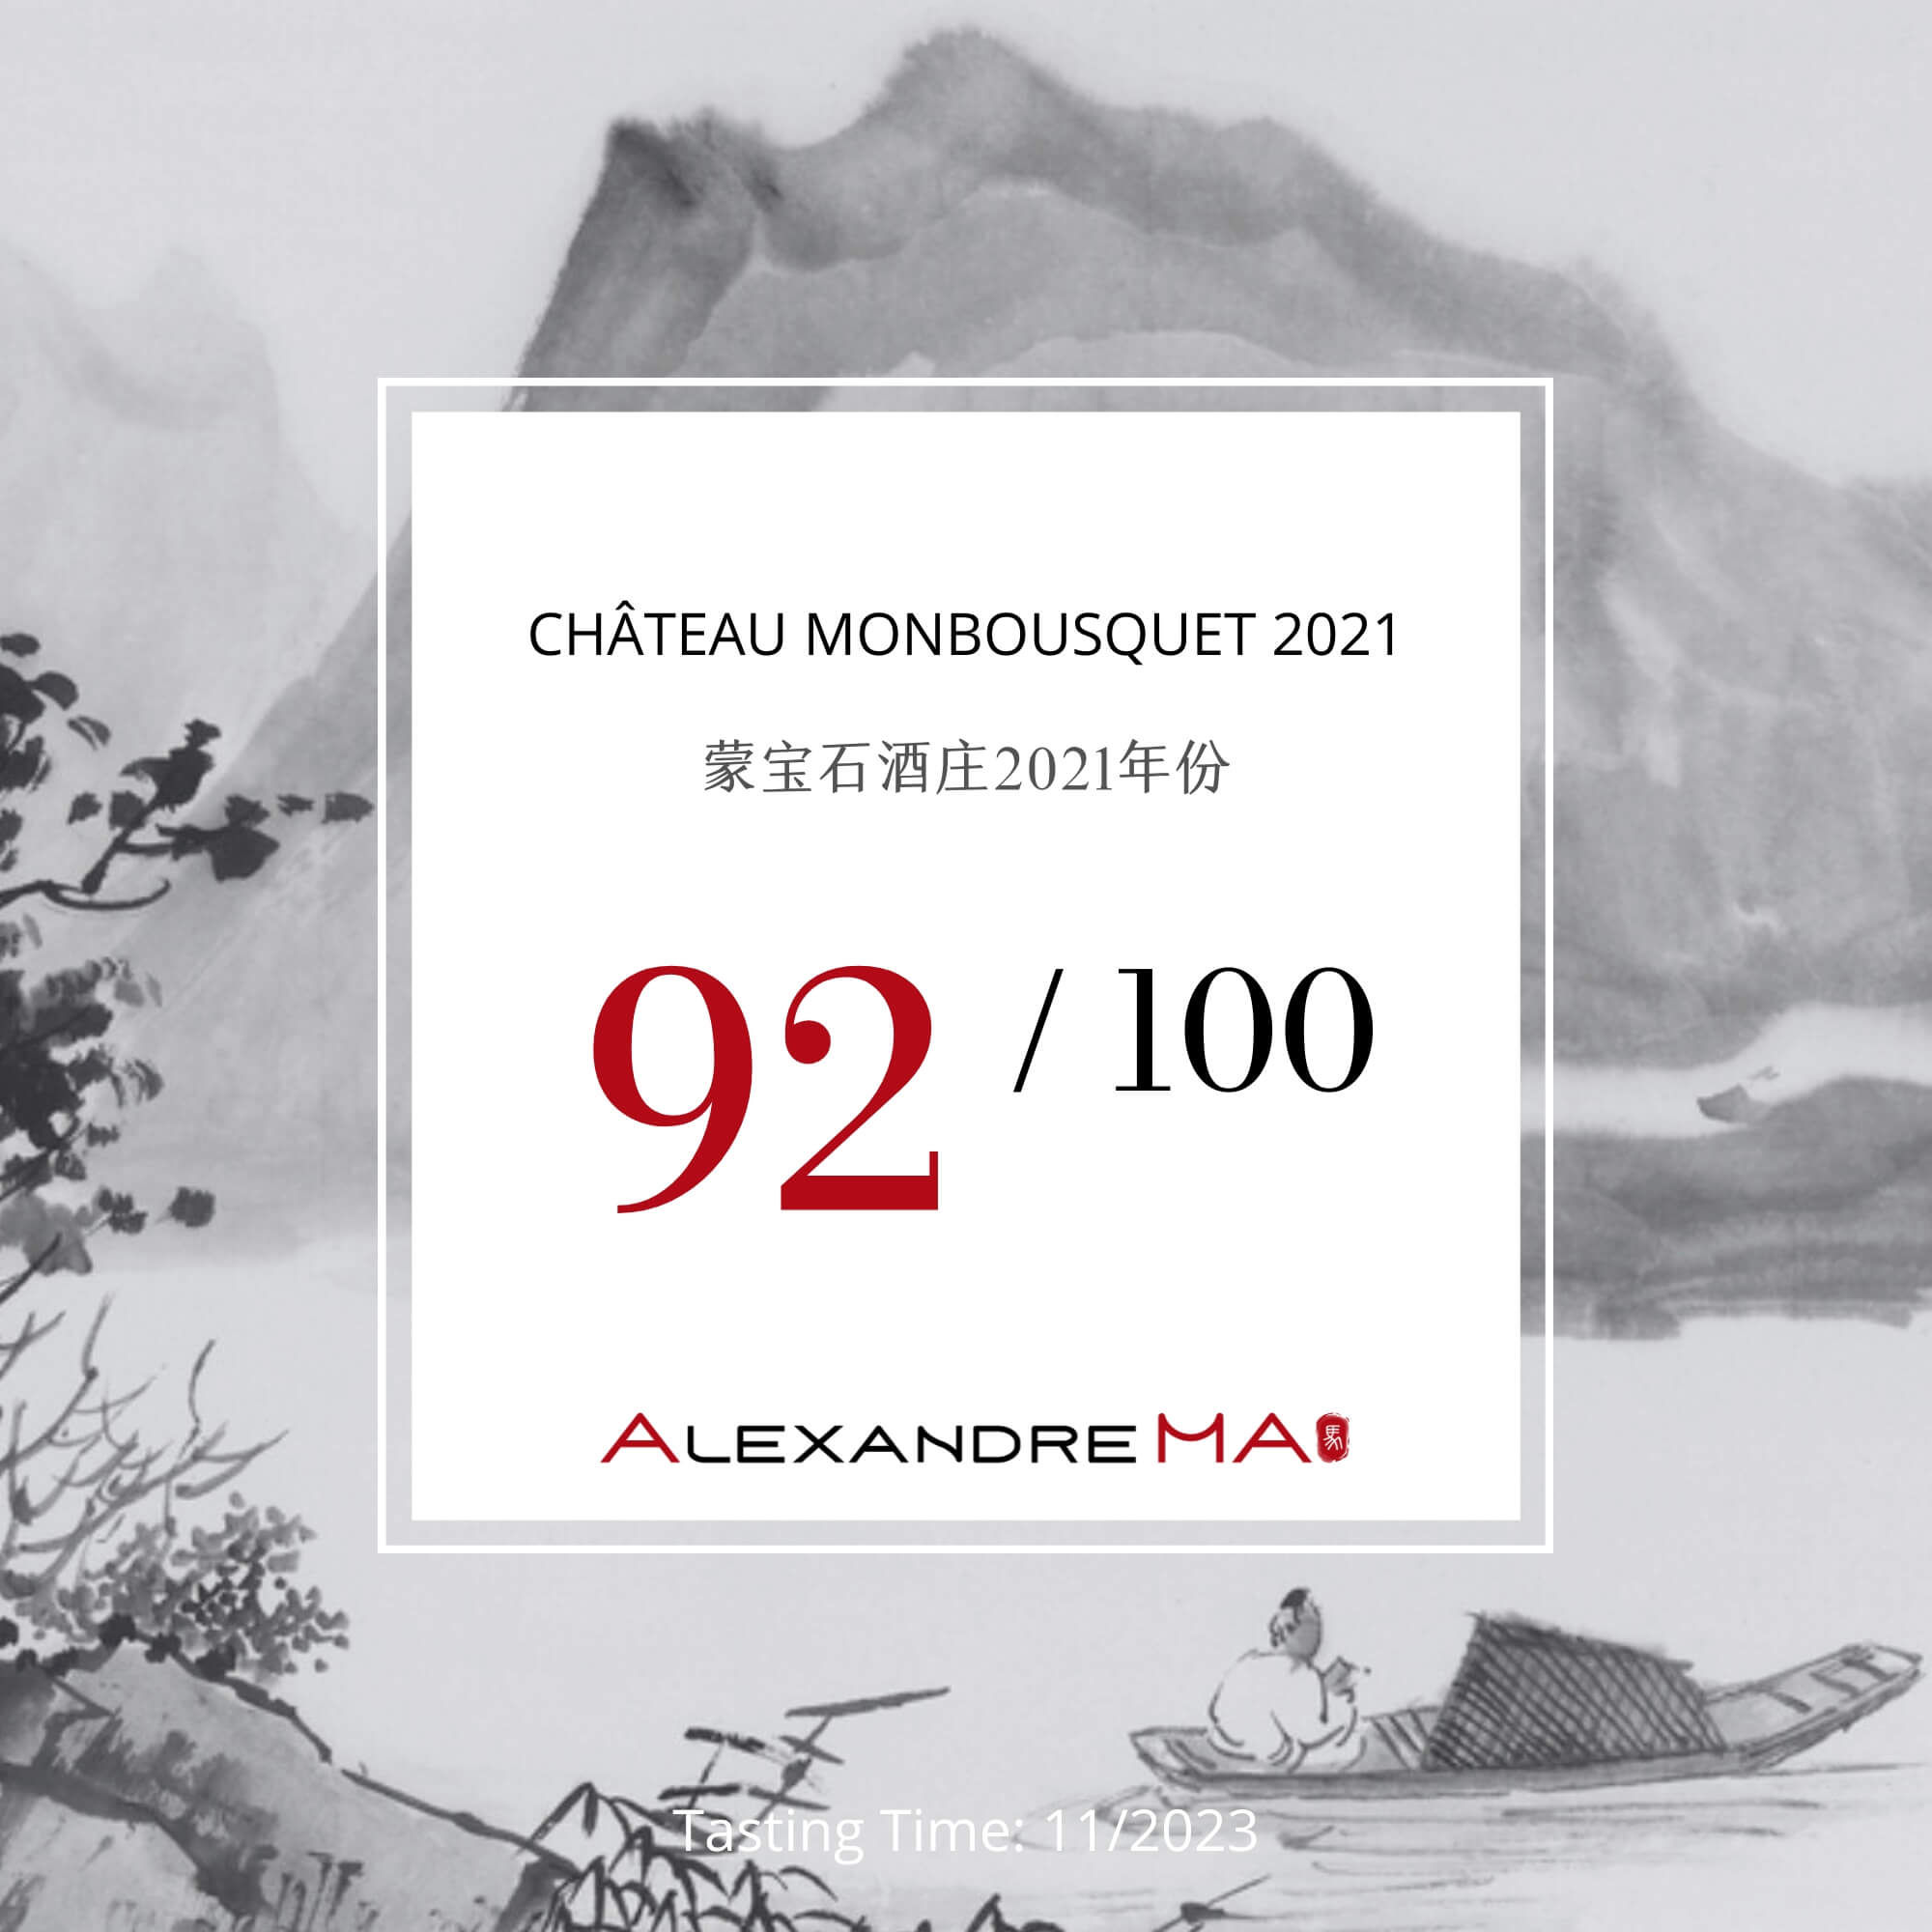 Château Monbousquet 2021 蒙宝石酒庄 - Alexandre Ma